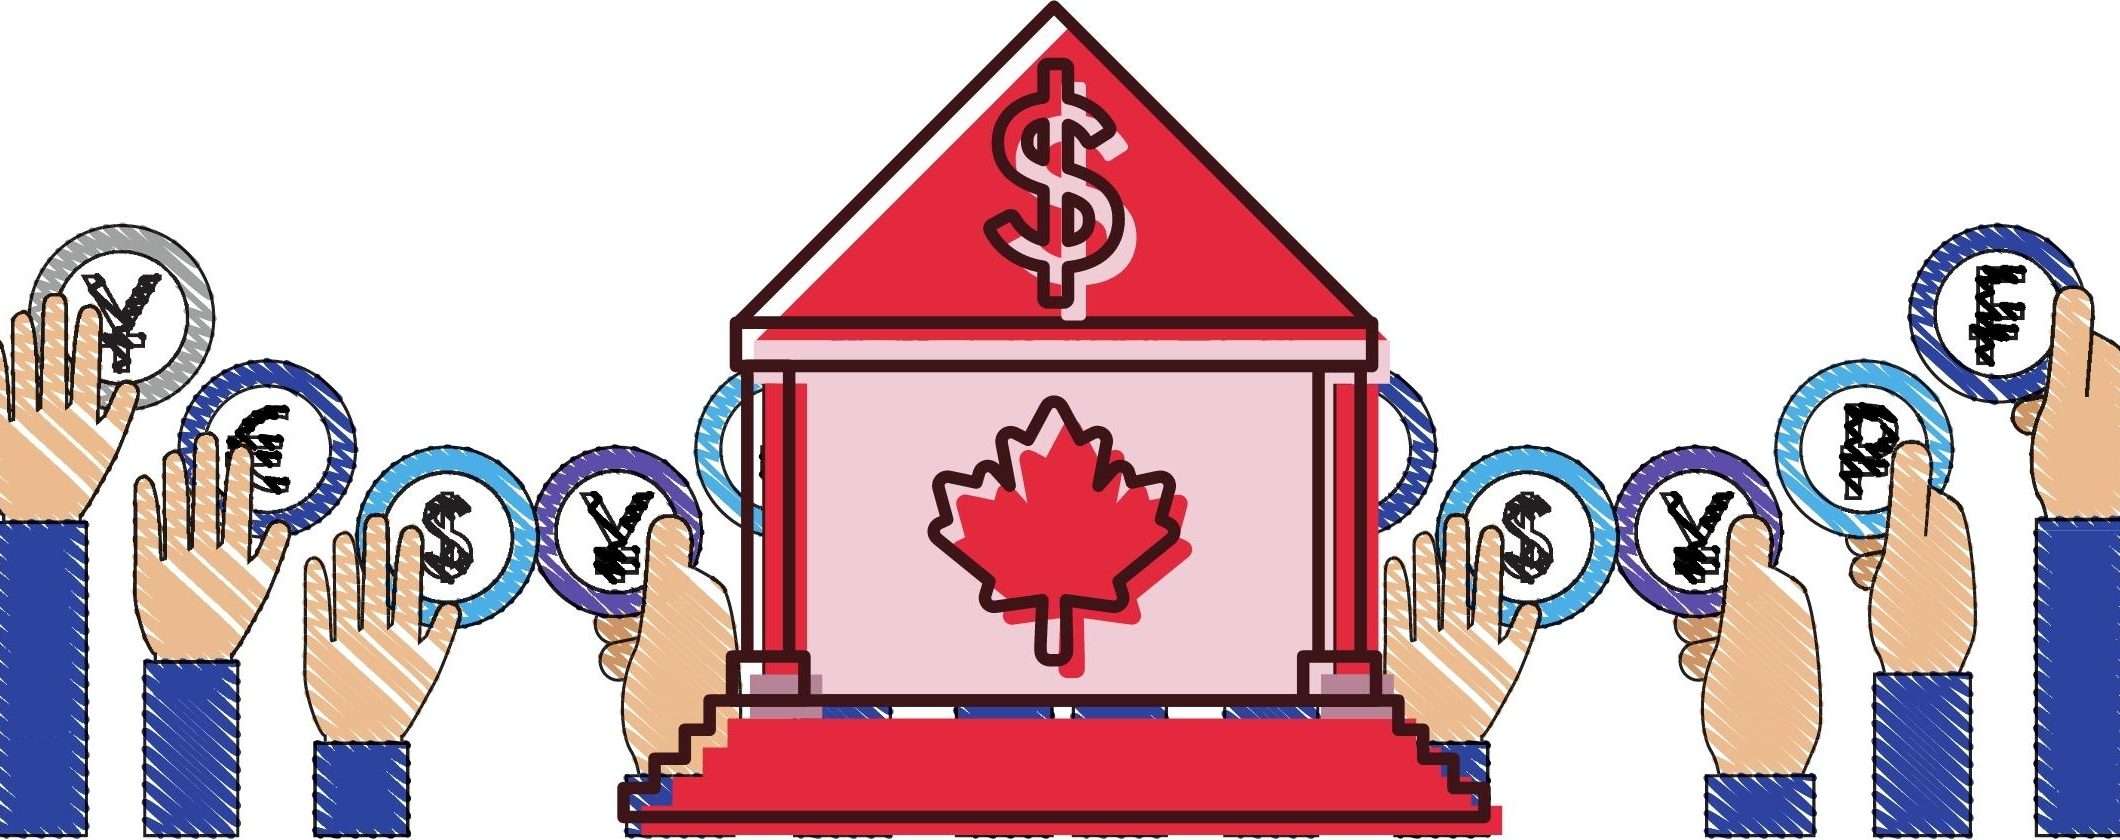 Bank of Canada vuole realizzare una sua valuta digitale